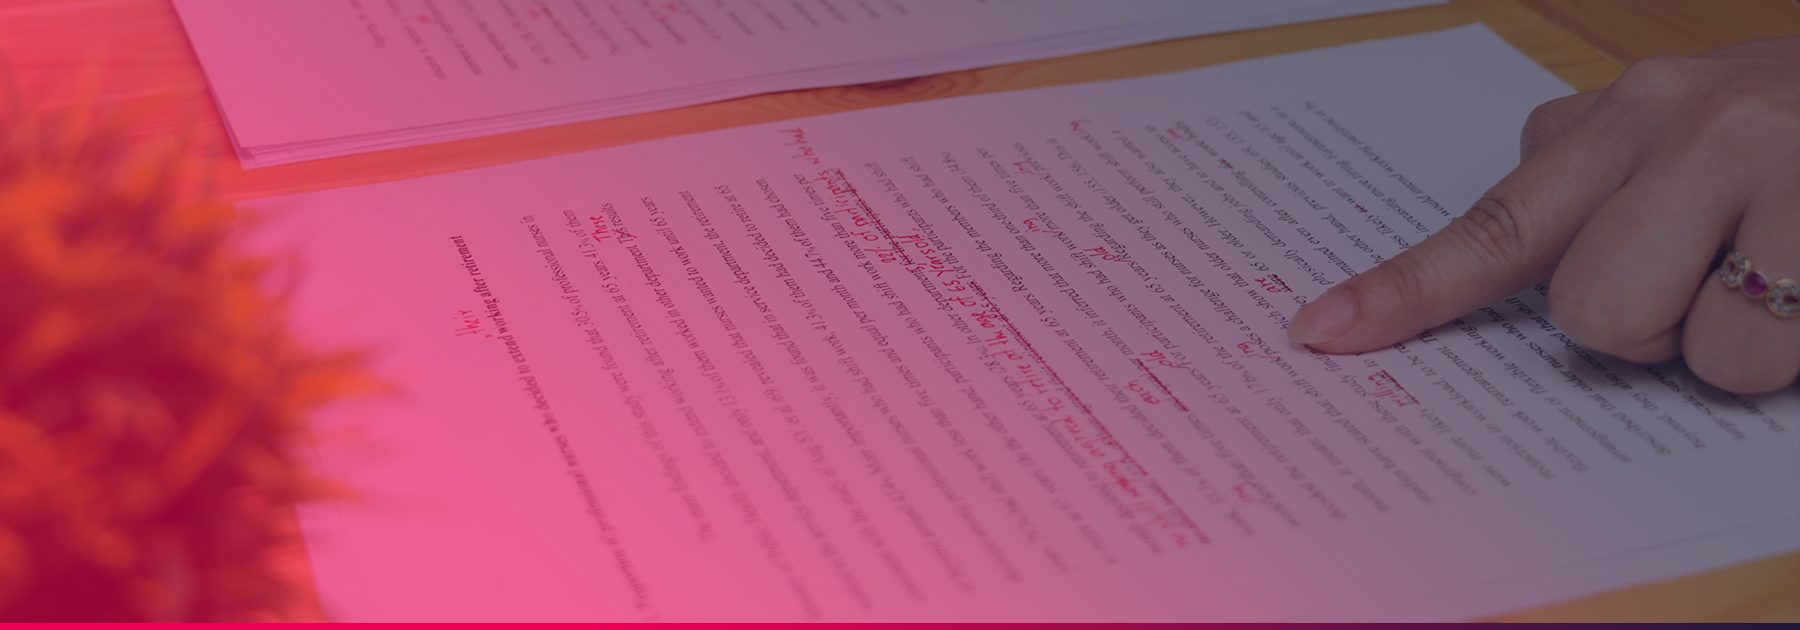 Nepište blbě. 5 tipů, jak odhalit chyby v textech jednou provždy